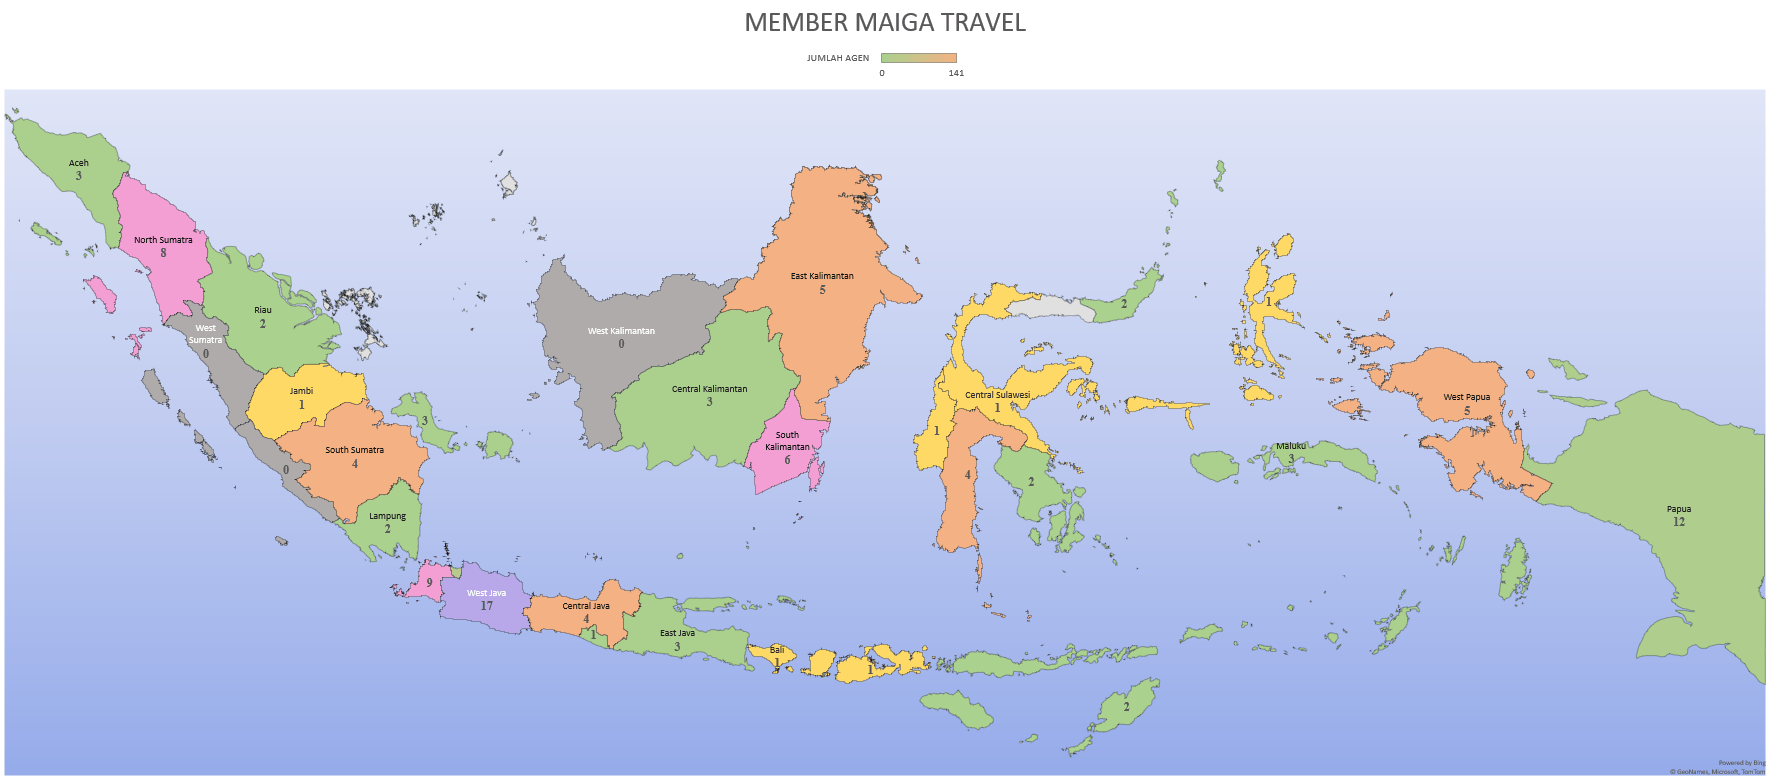 Peta Member Maiga Travel